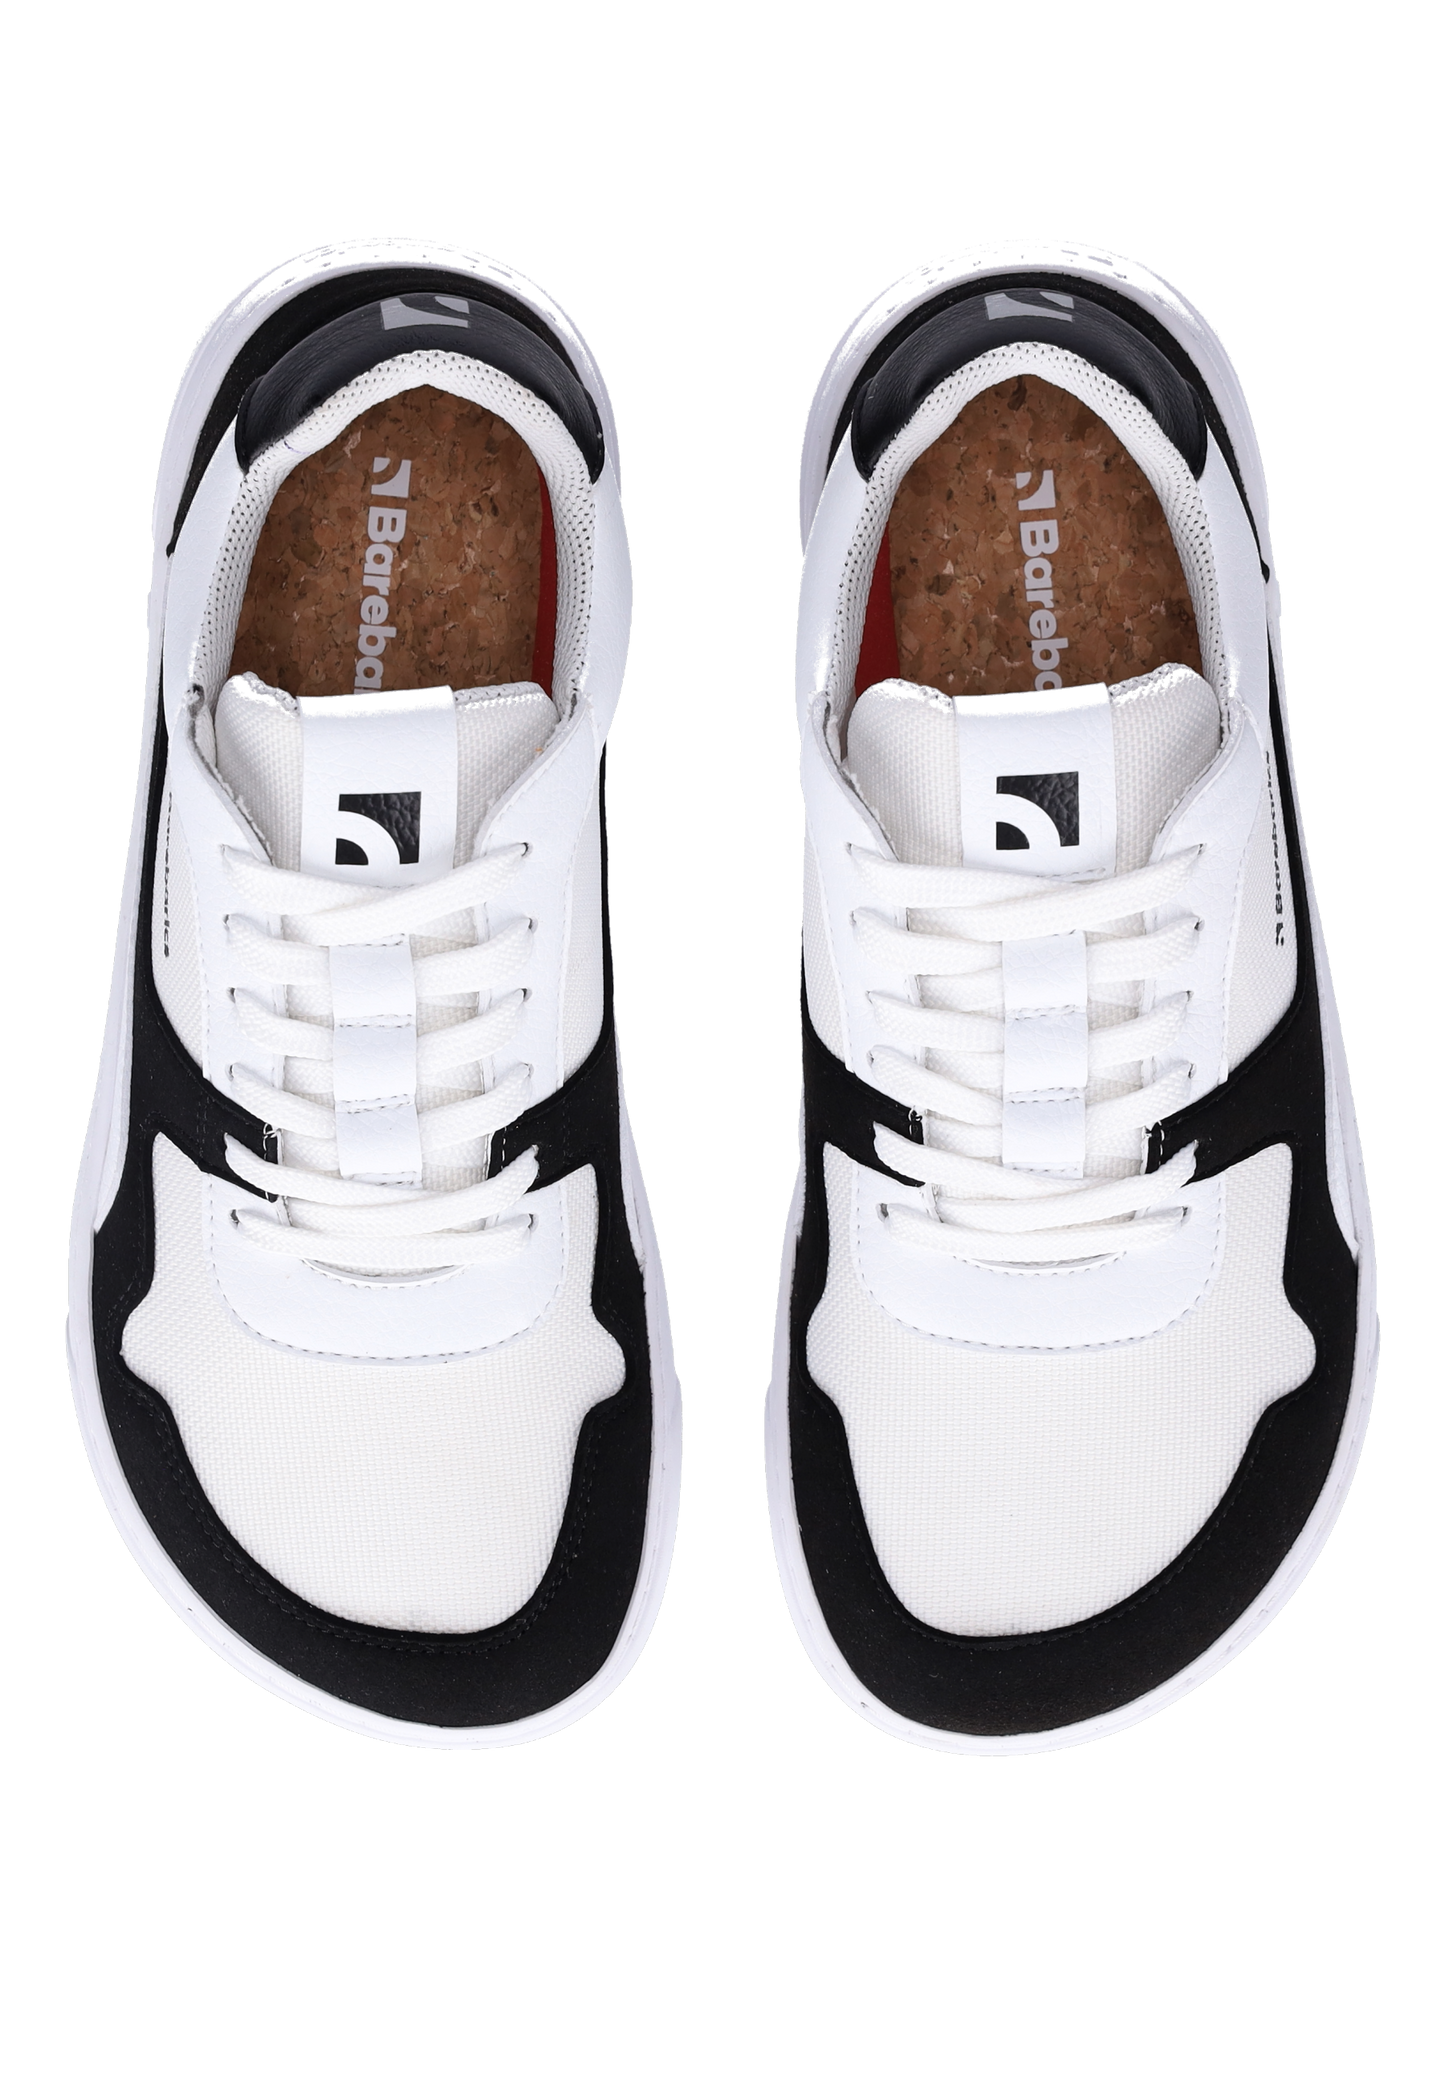 Barebarics Zing Barefoot Sneakers - White & Black